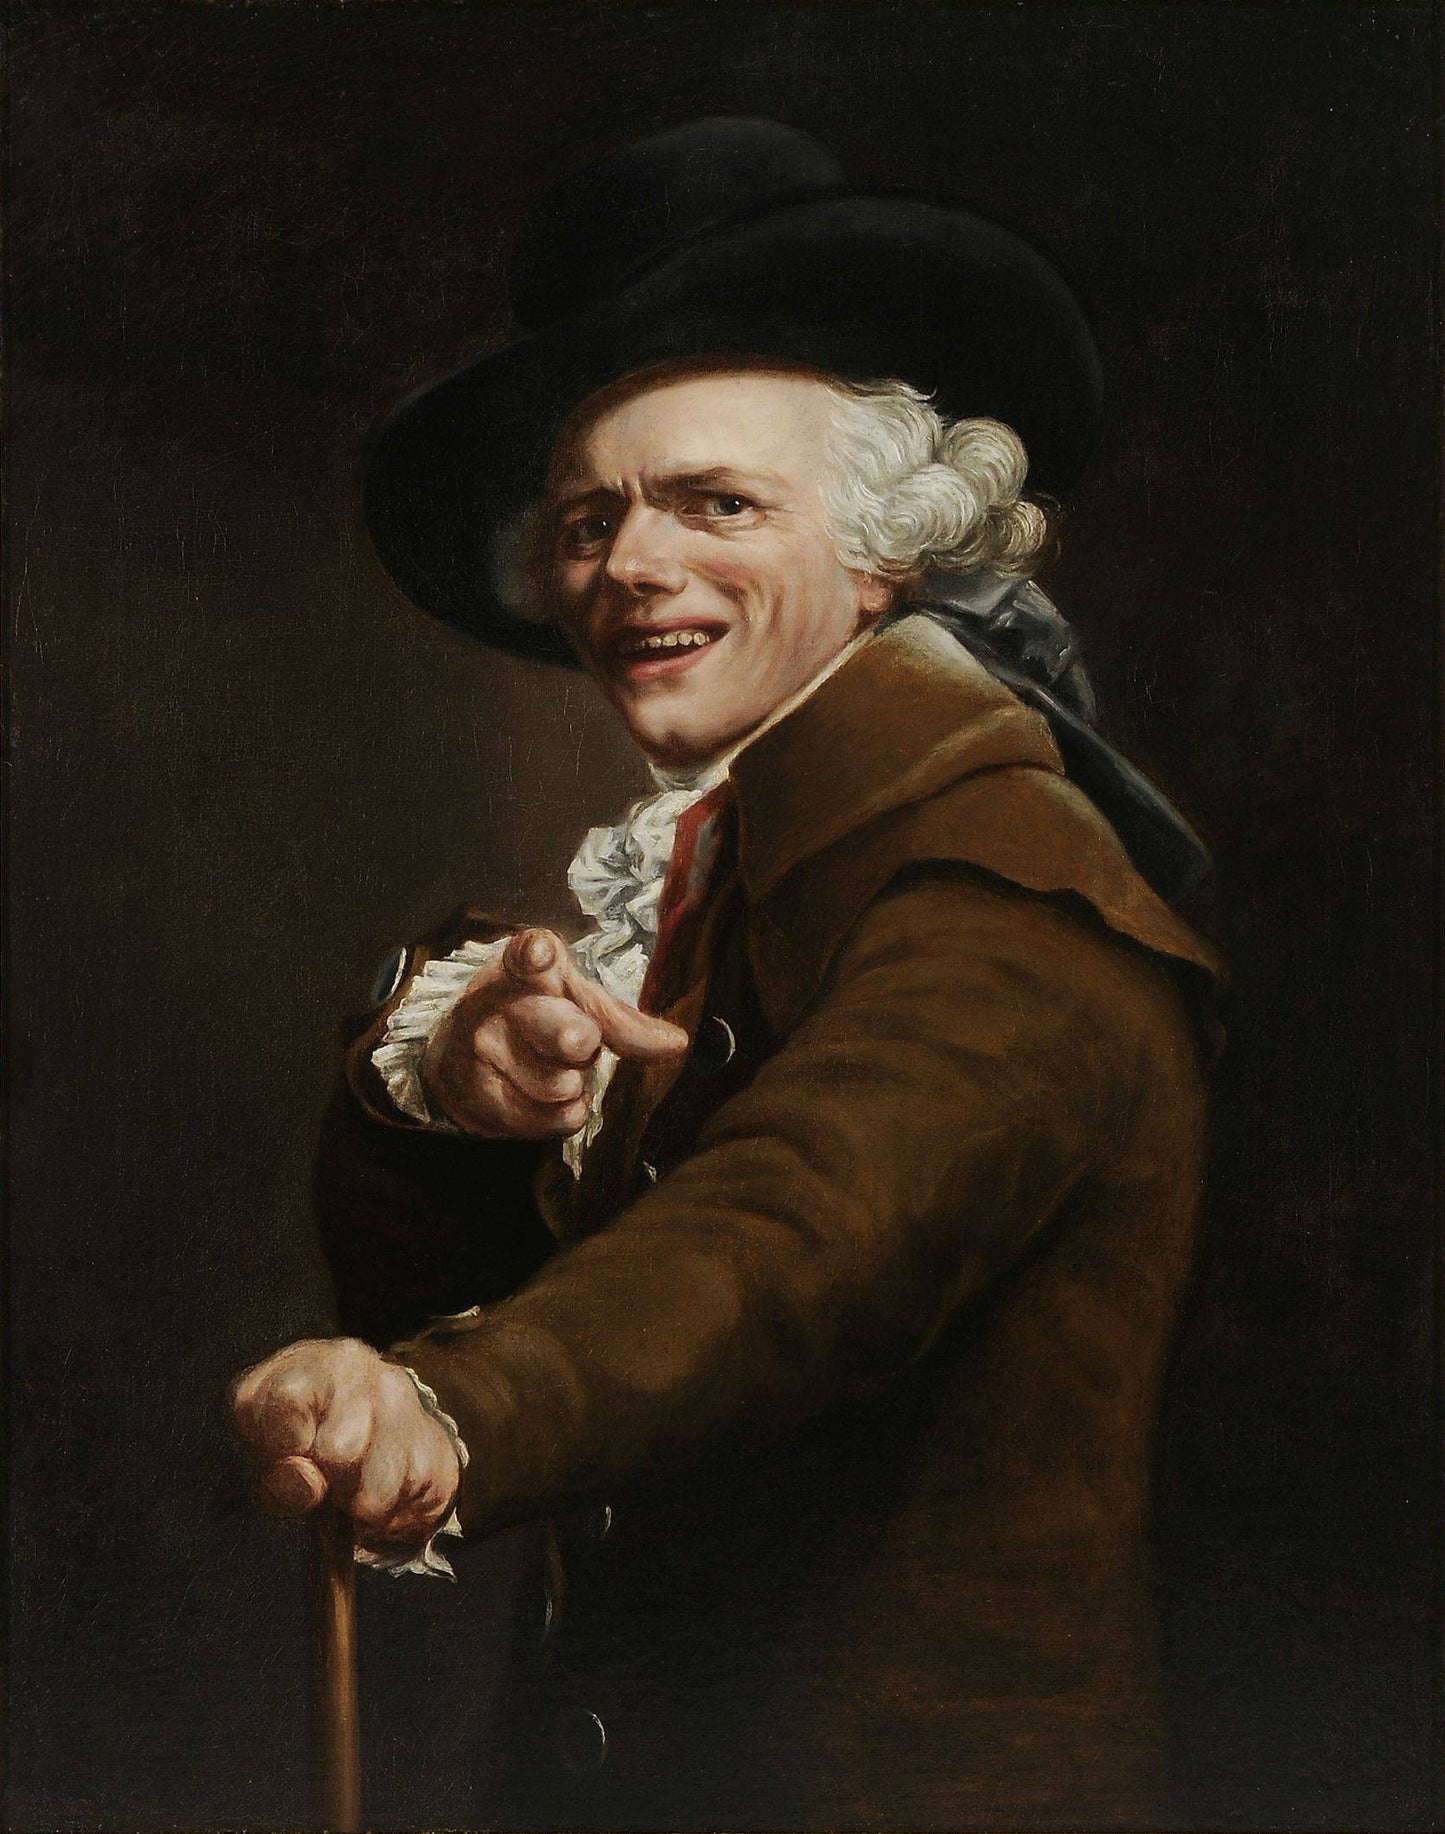 Portrait de l'artiste sous les traits d'un moqueur byJoseoh Ducreux, 1793 - Postcard